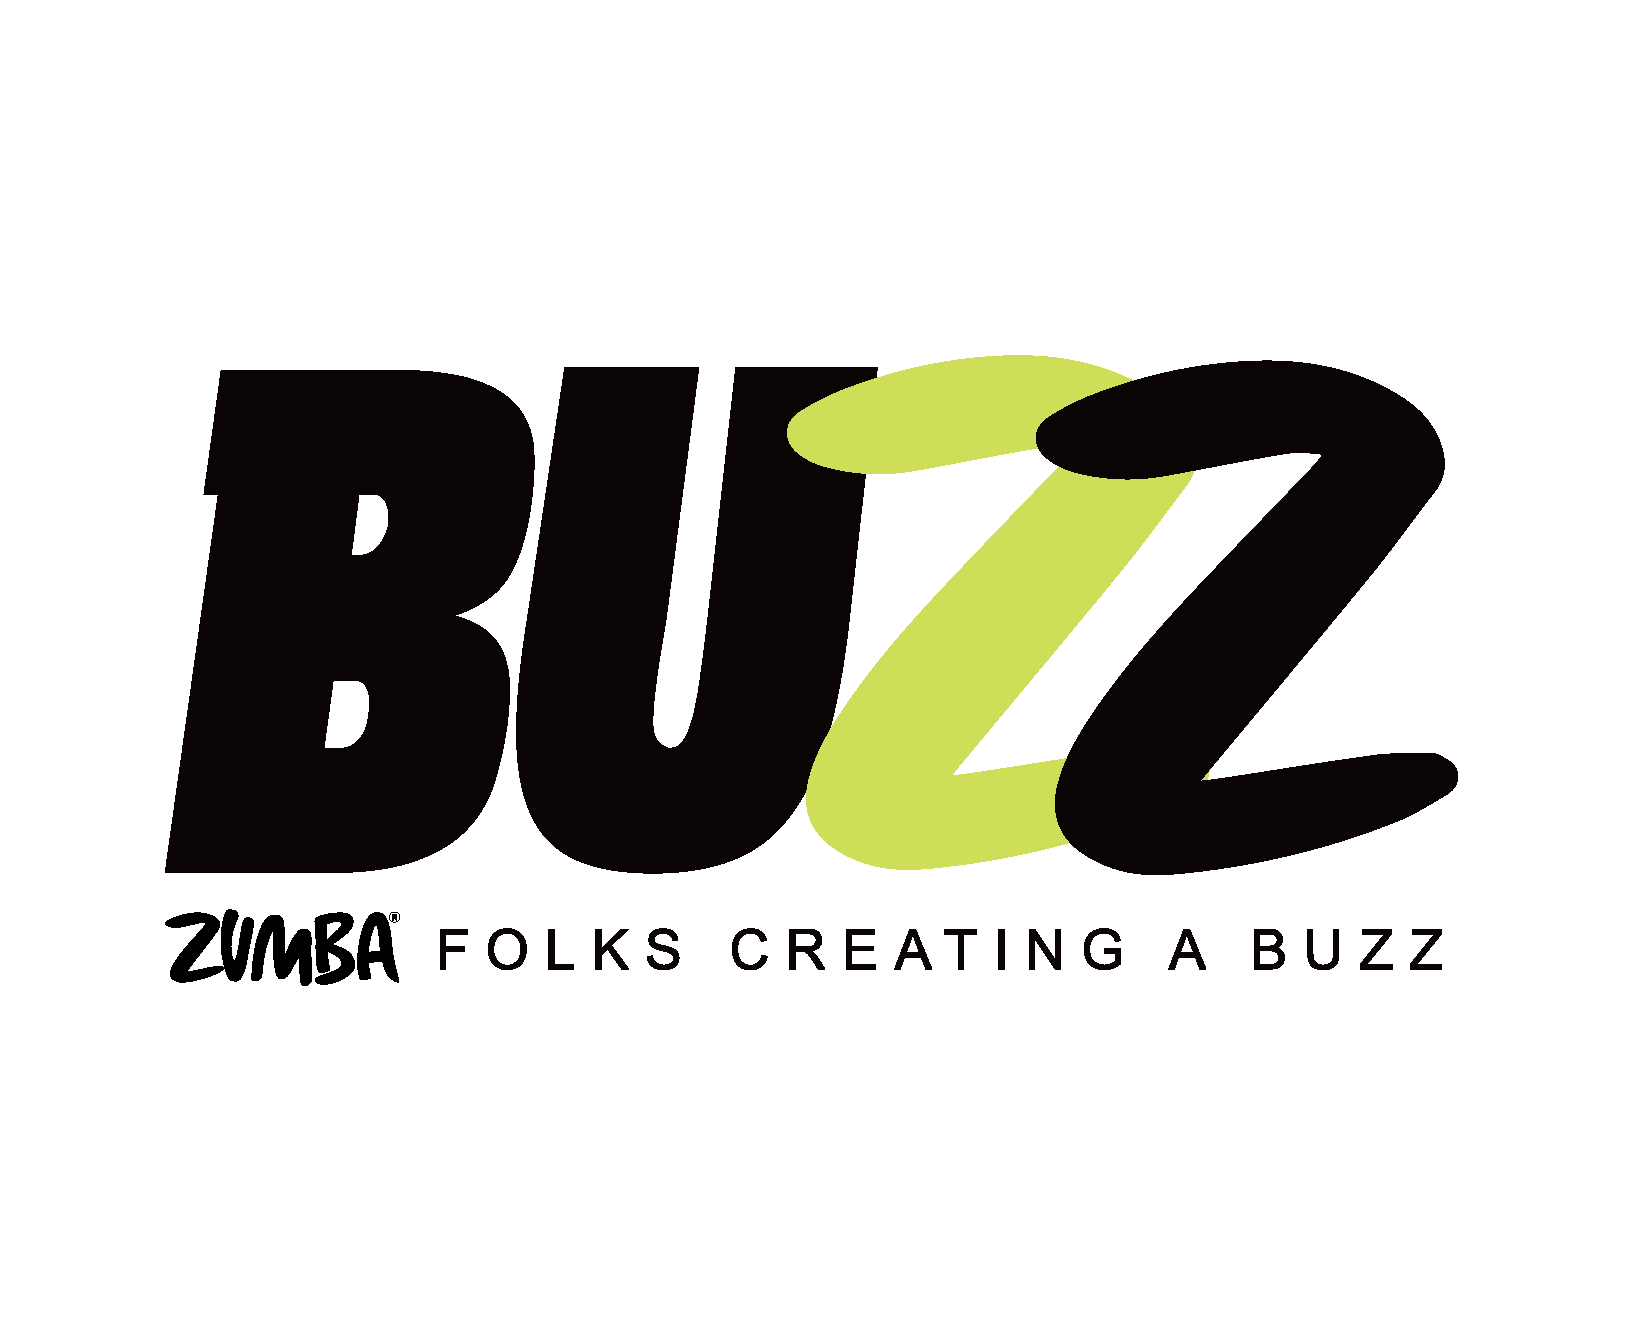 Buzz Studio